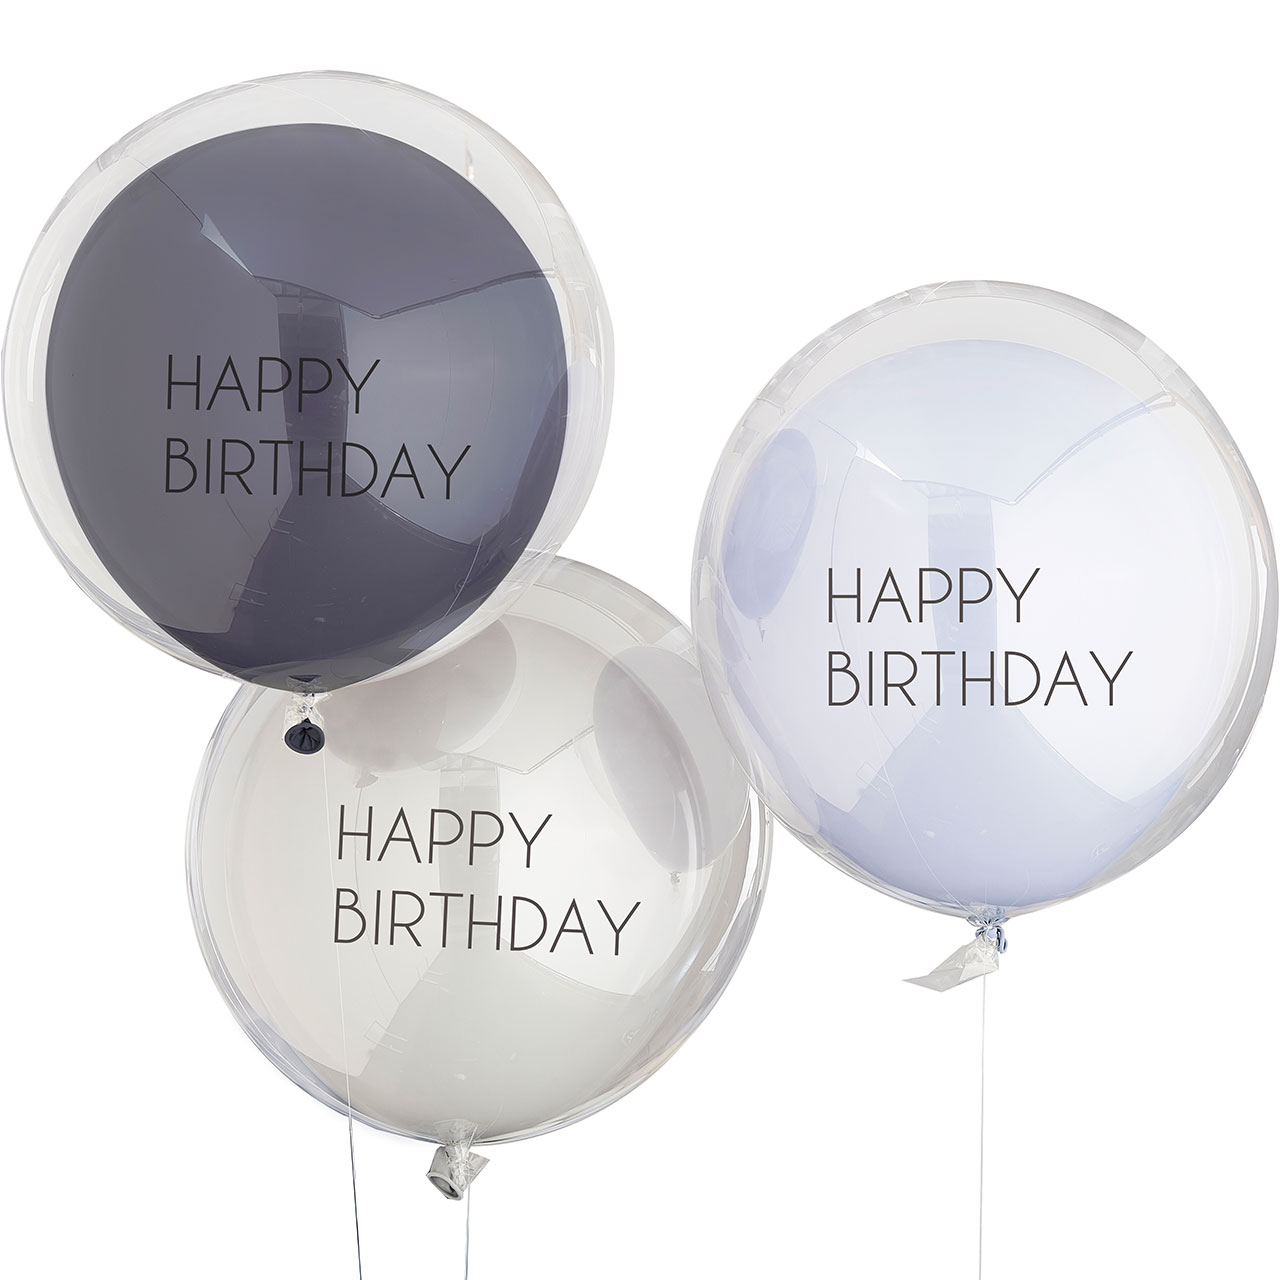 Ballons Blau & Grau Happy Birthday